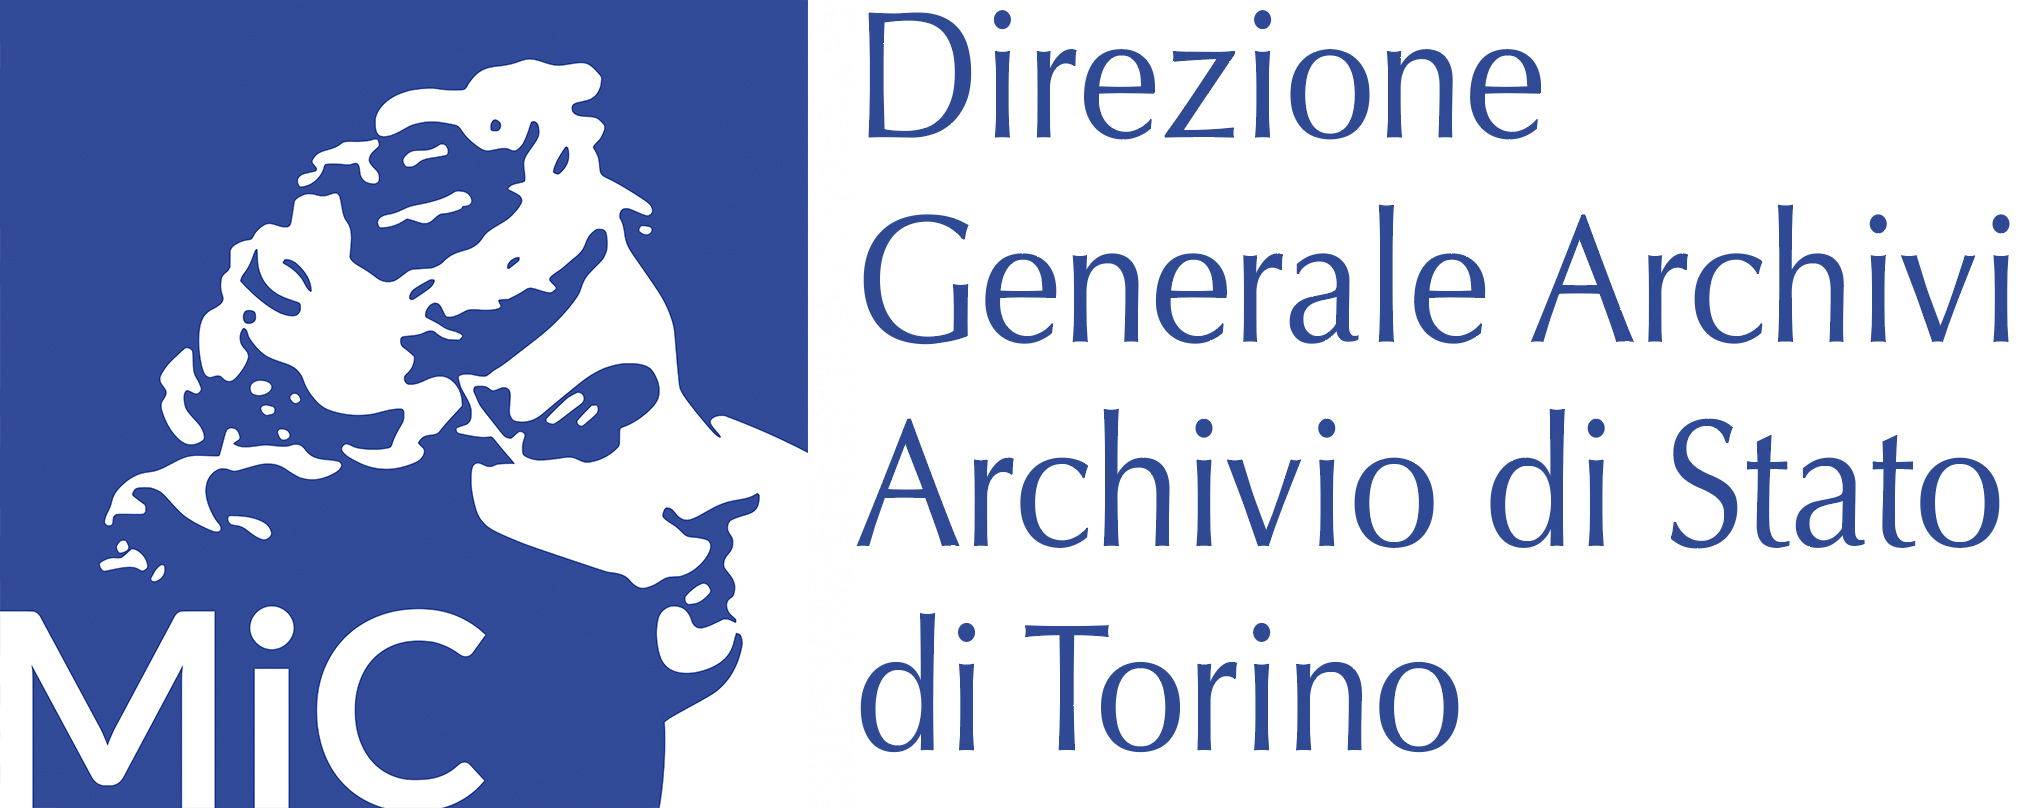 Archivio di Stato Torino - Caso studio Riconnessioni